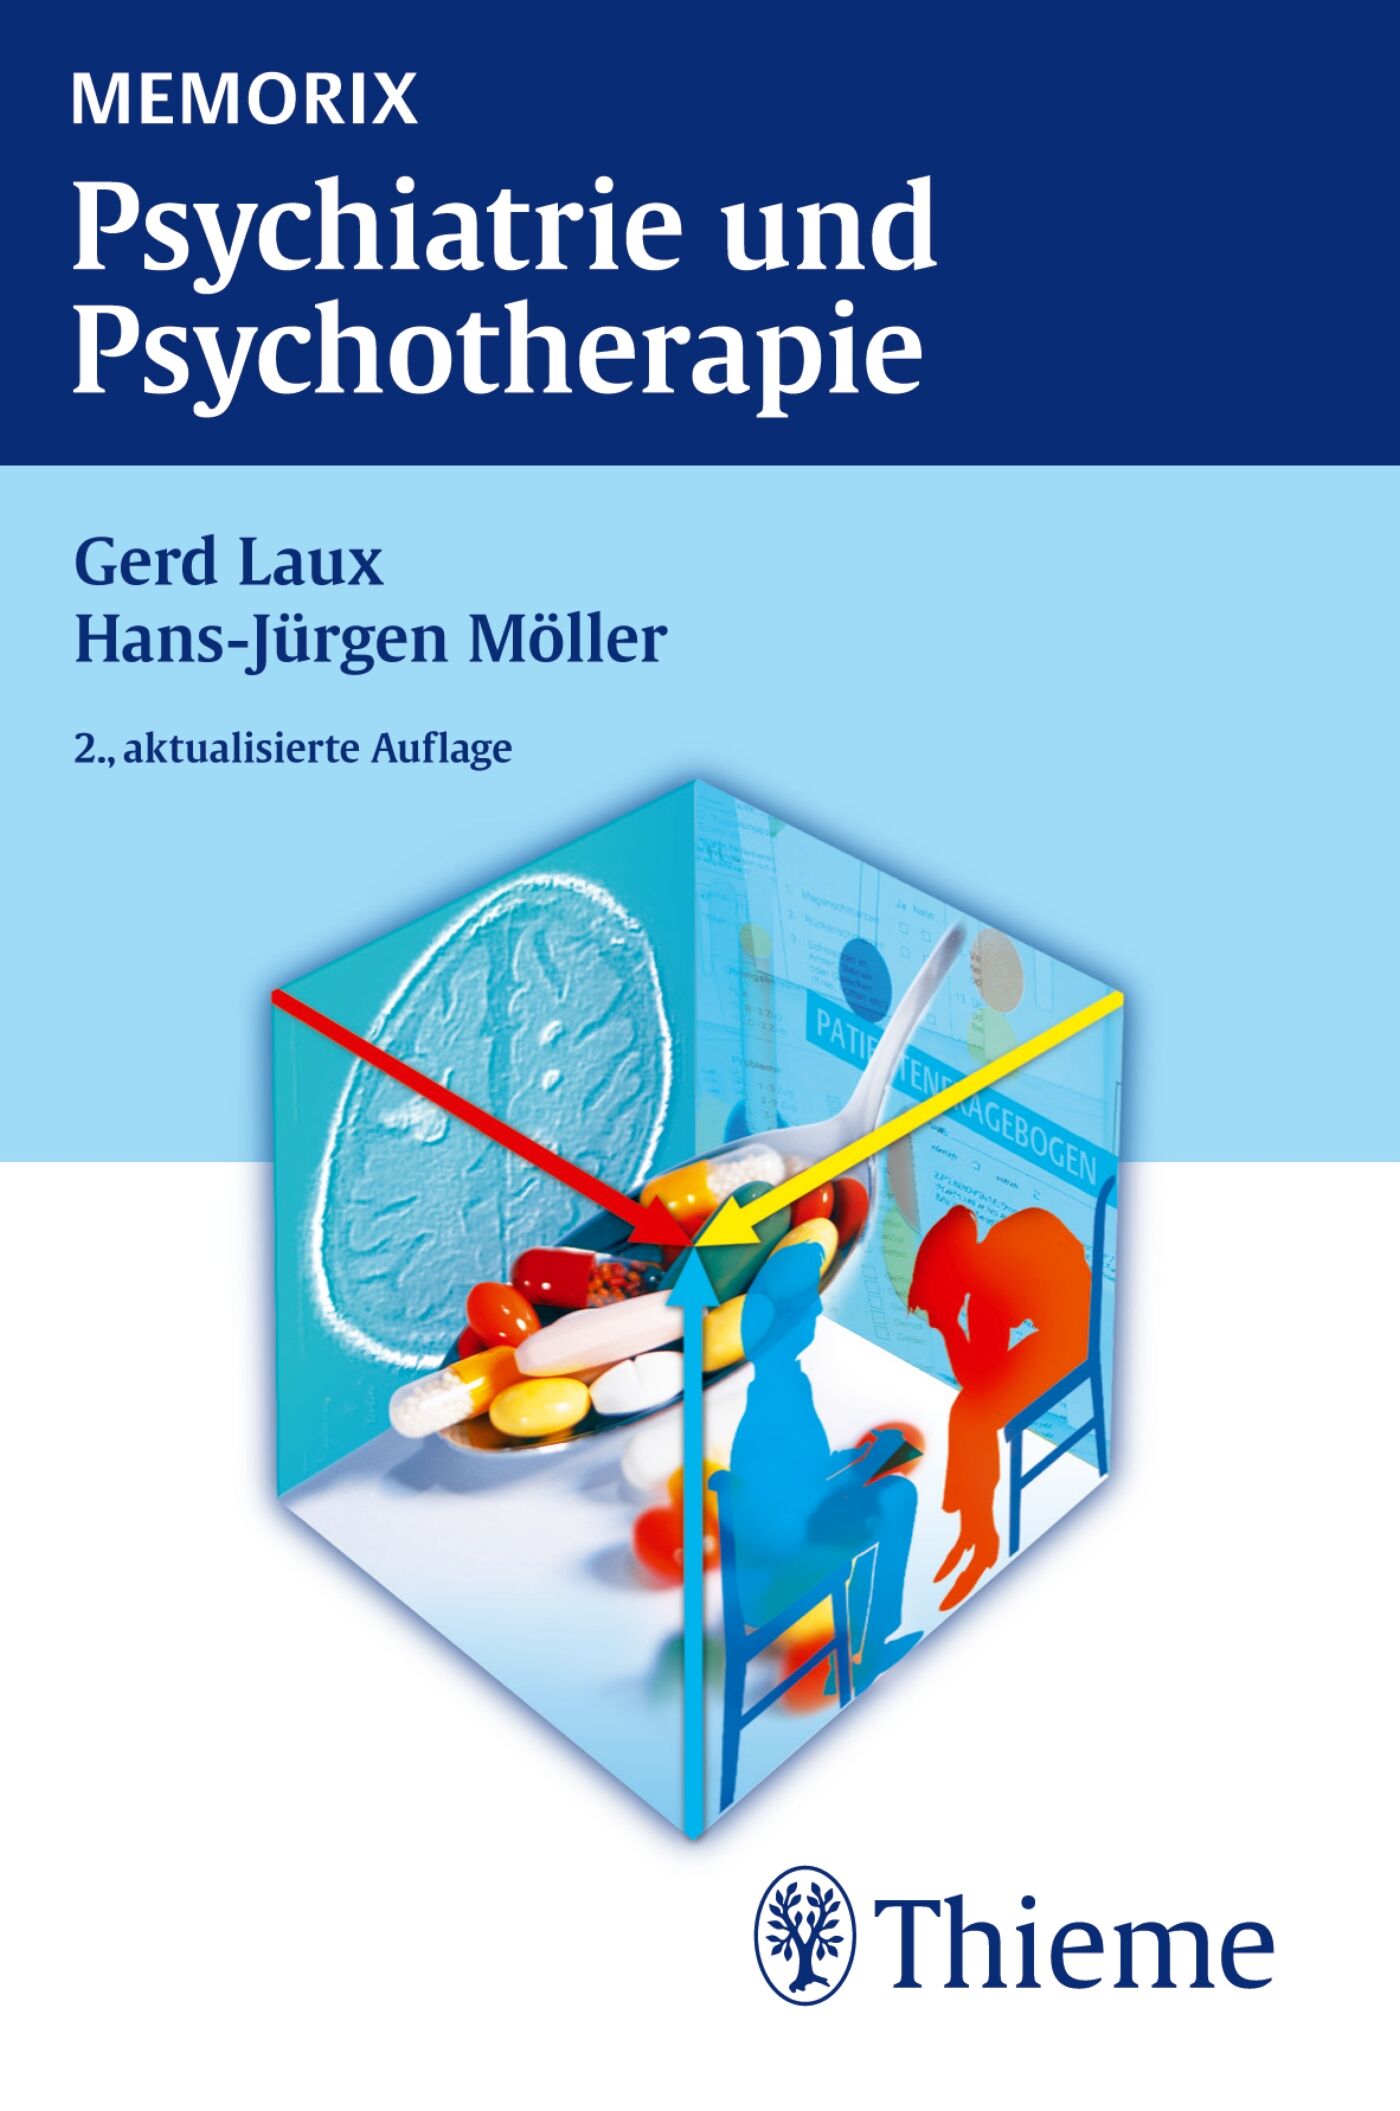 Memorix Psychiatrie und Psychotherapie, 9783131646323